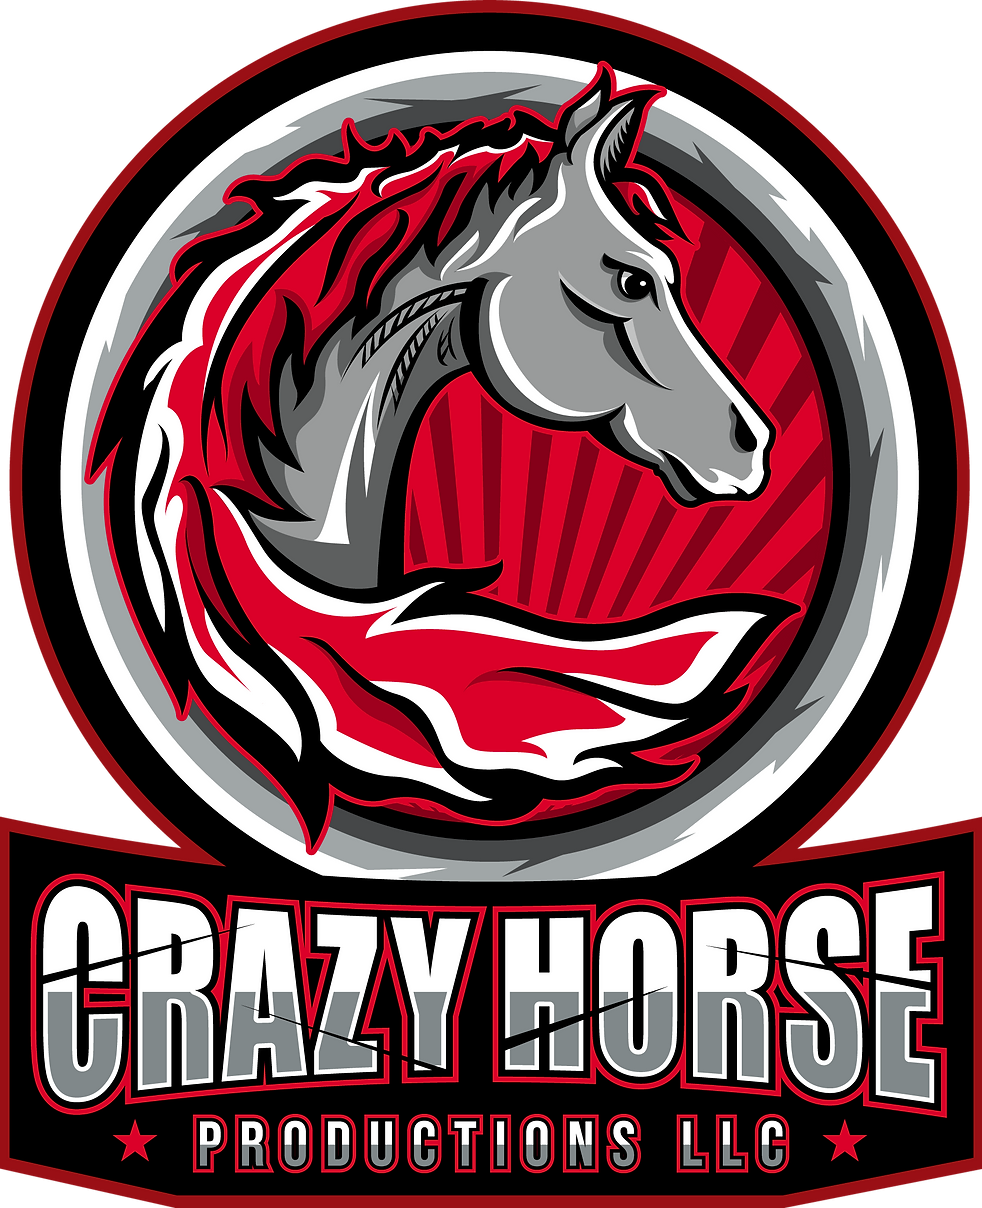 Crazy Horse Productions LLC